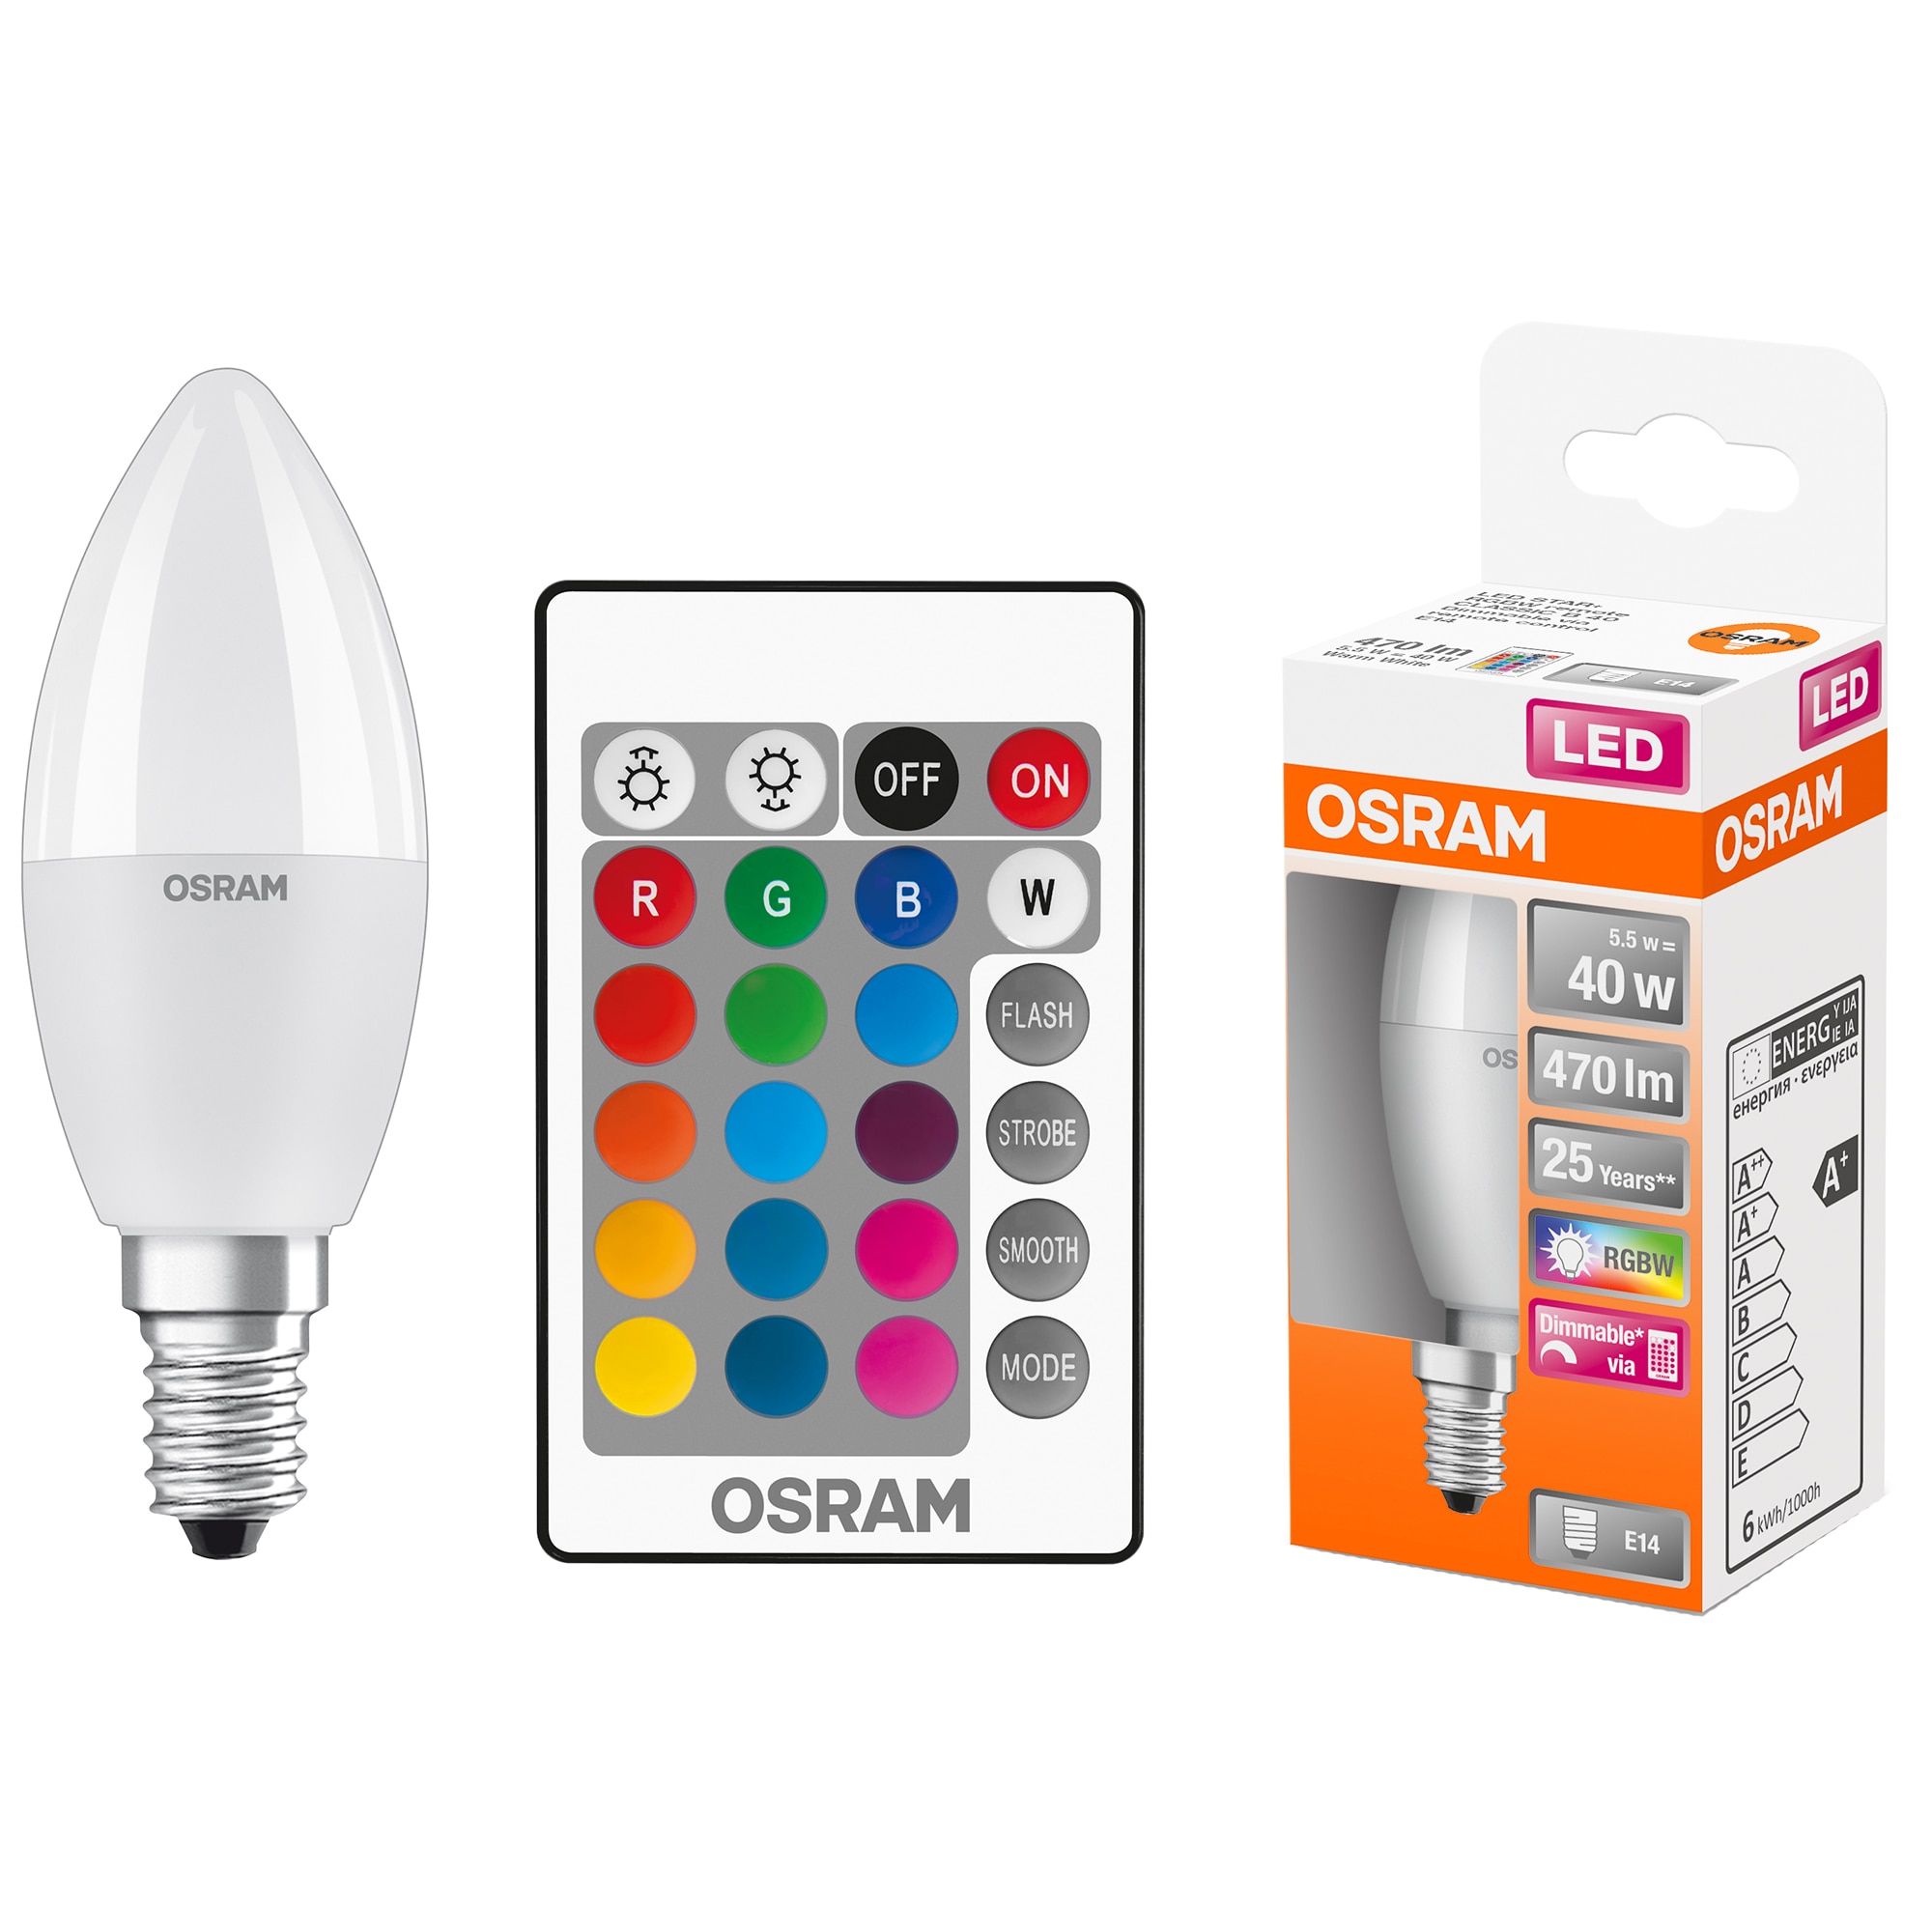 Osram Star RGBW LED izzó távirányítóval, szabályozható, E14, (40W), 470 lm, fehér színes fény -